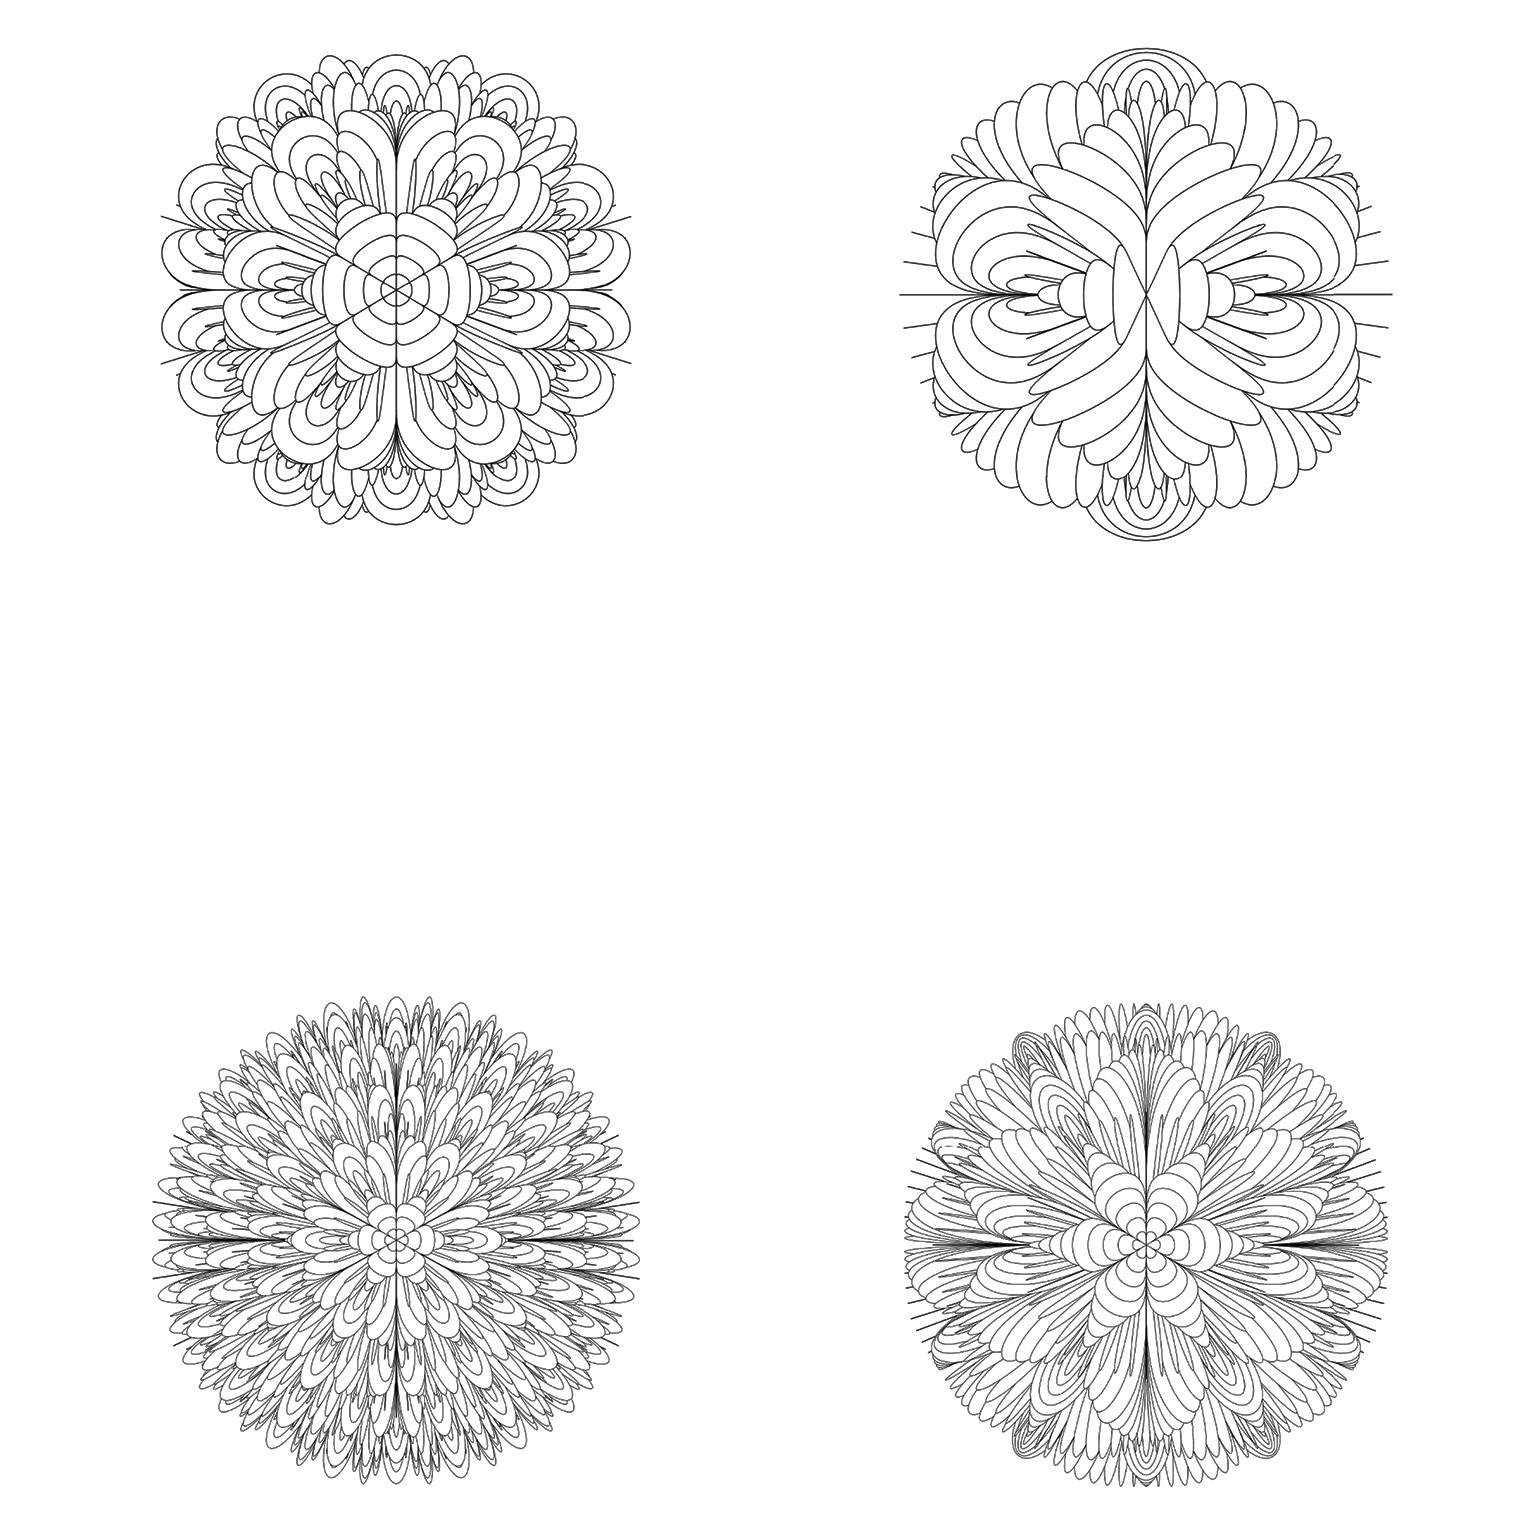 Algorithme de Bloom n° 1 de la série Bloom par Norman Mooney
Impression numérique pigmentaire, montée et encadrée
Edition de 25

Inspirée par les travaux du biologiste du XIXe siècle Ernst Haeckel et son étude des microbes, la série Bloom est une